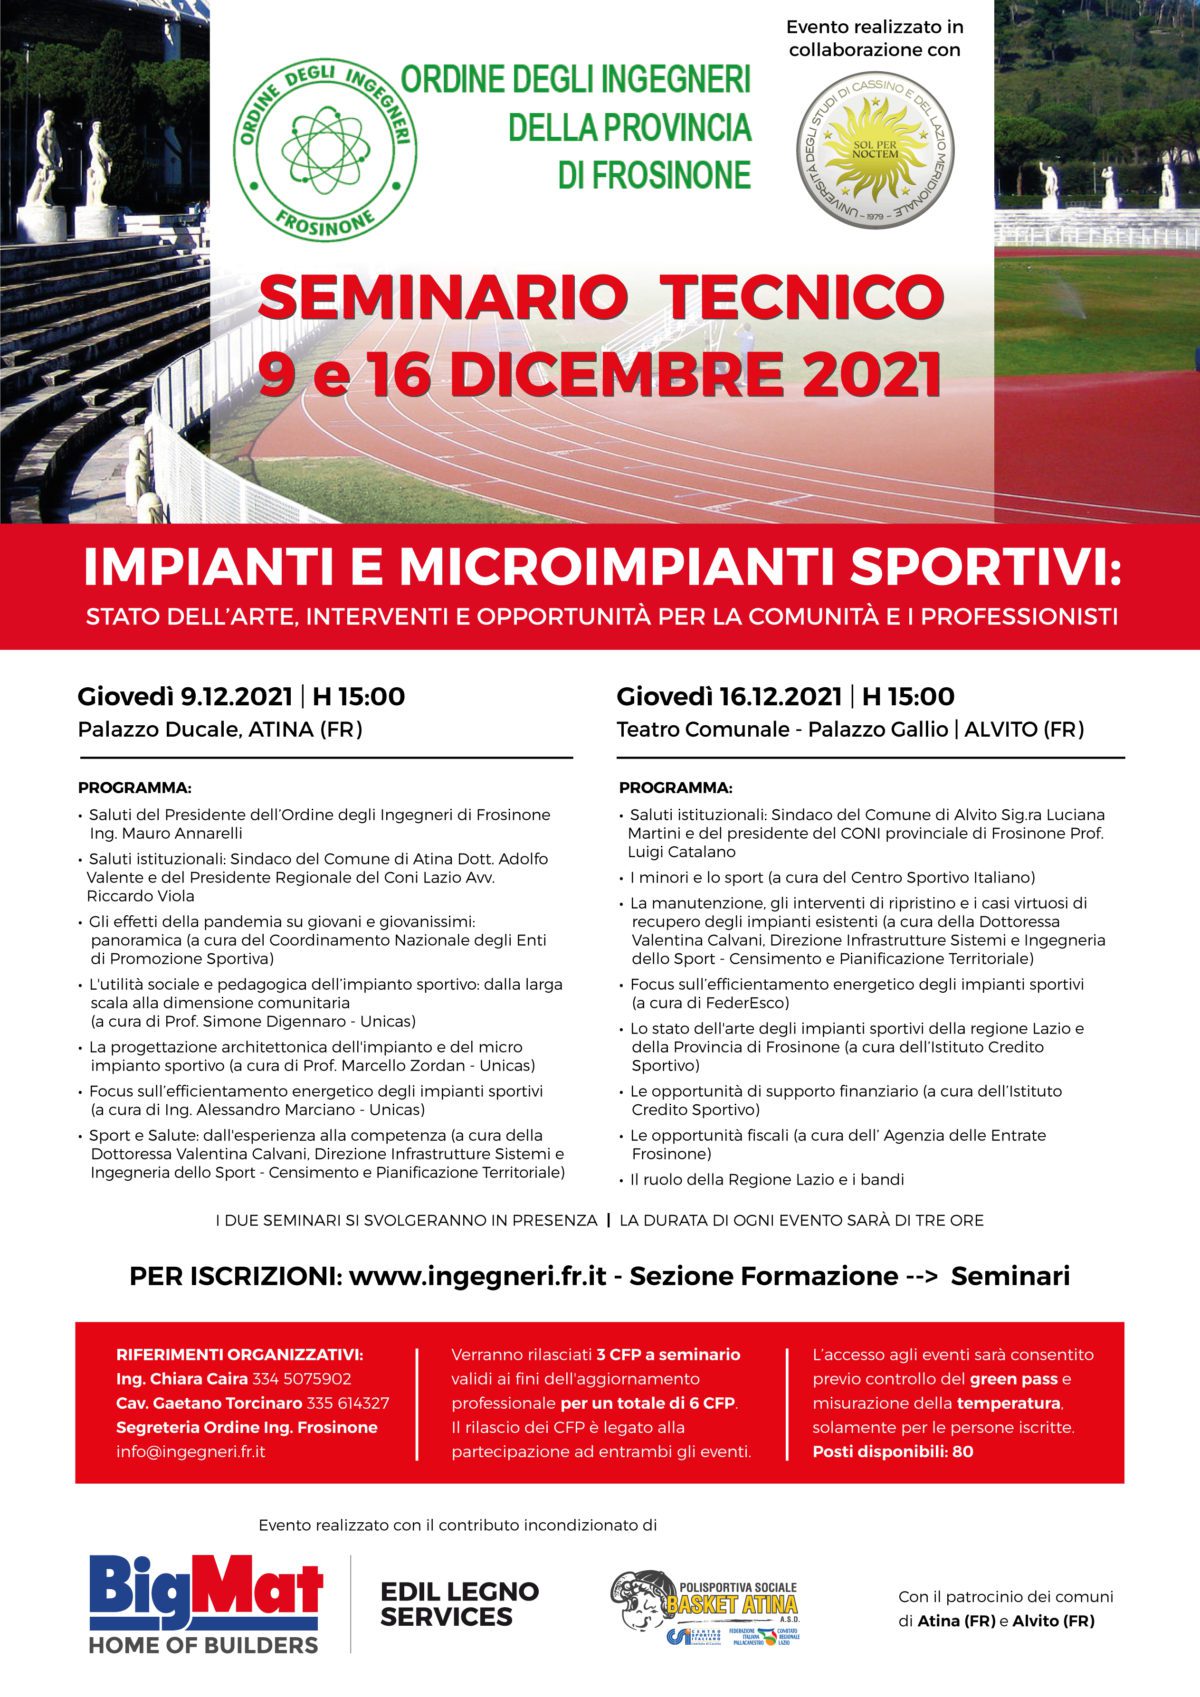 Cassino “Impianti e microimpianti sportivi: stato dell’arte, interventi e opportunità per la comunità e i professionisti” seminario tecnico x